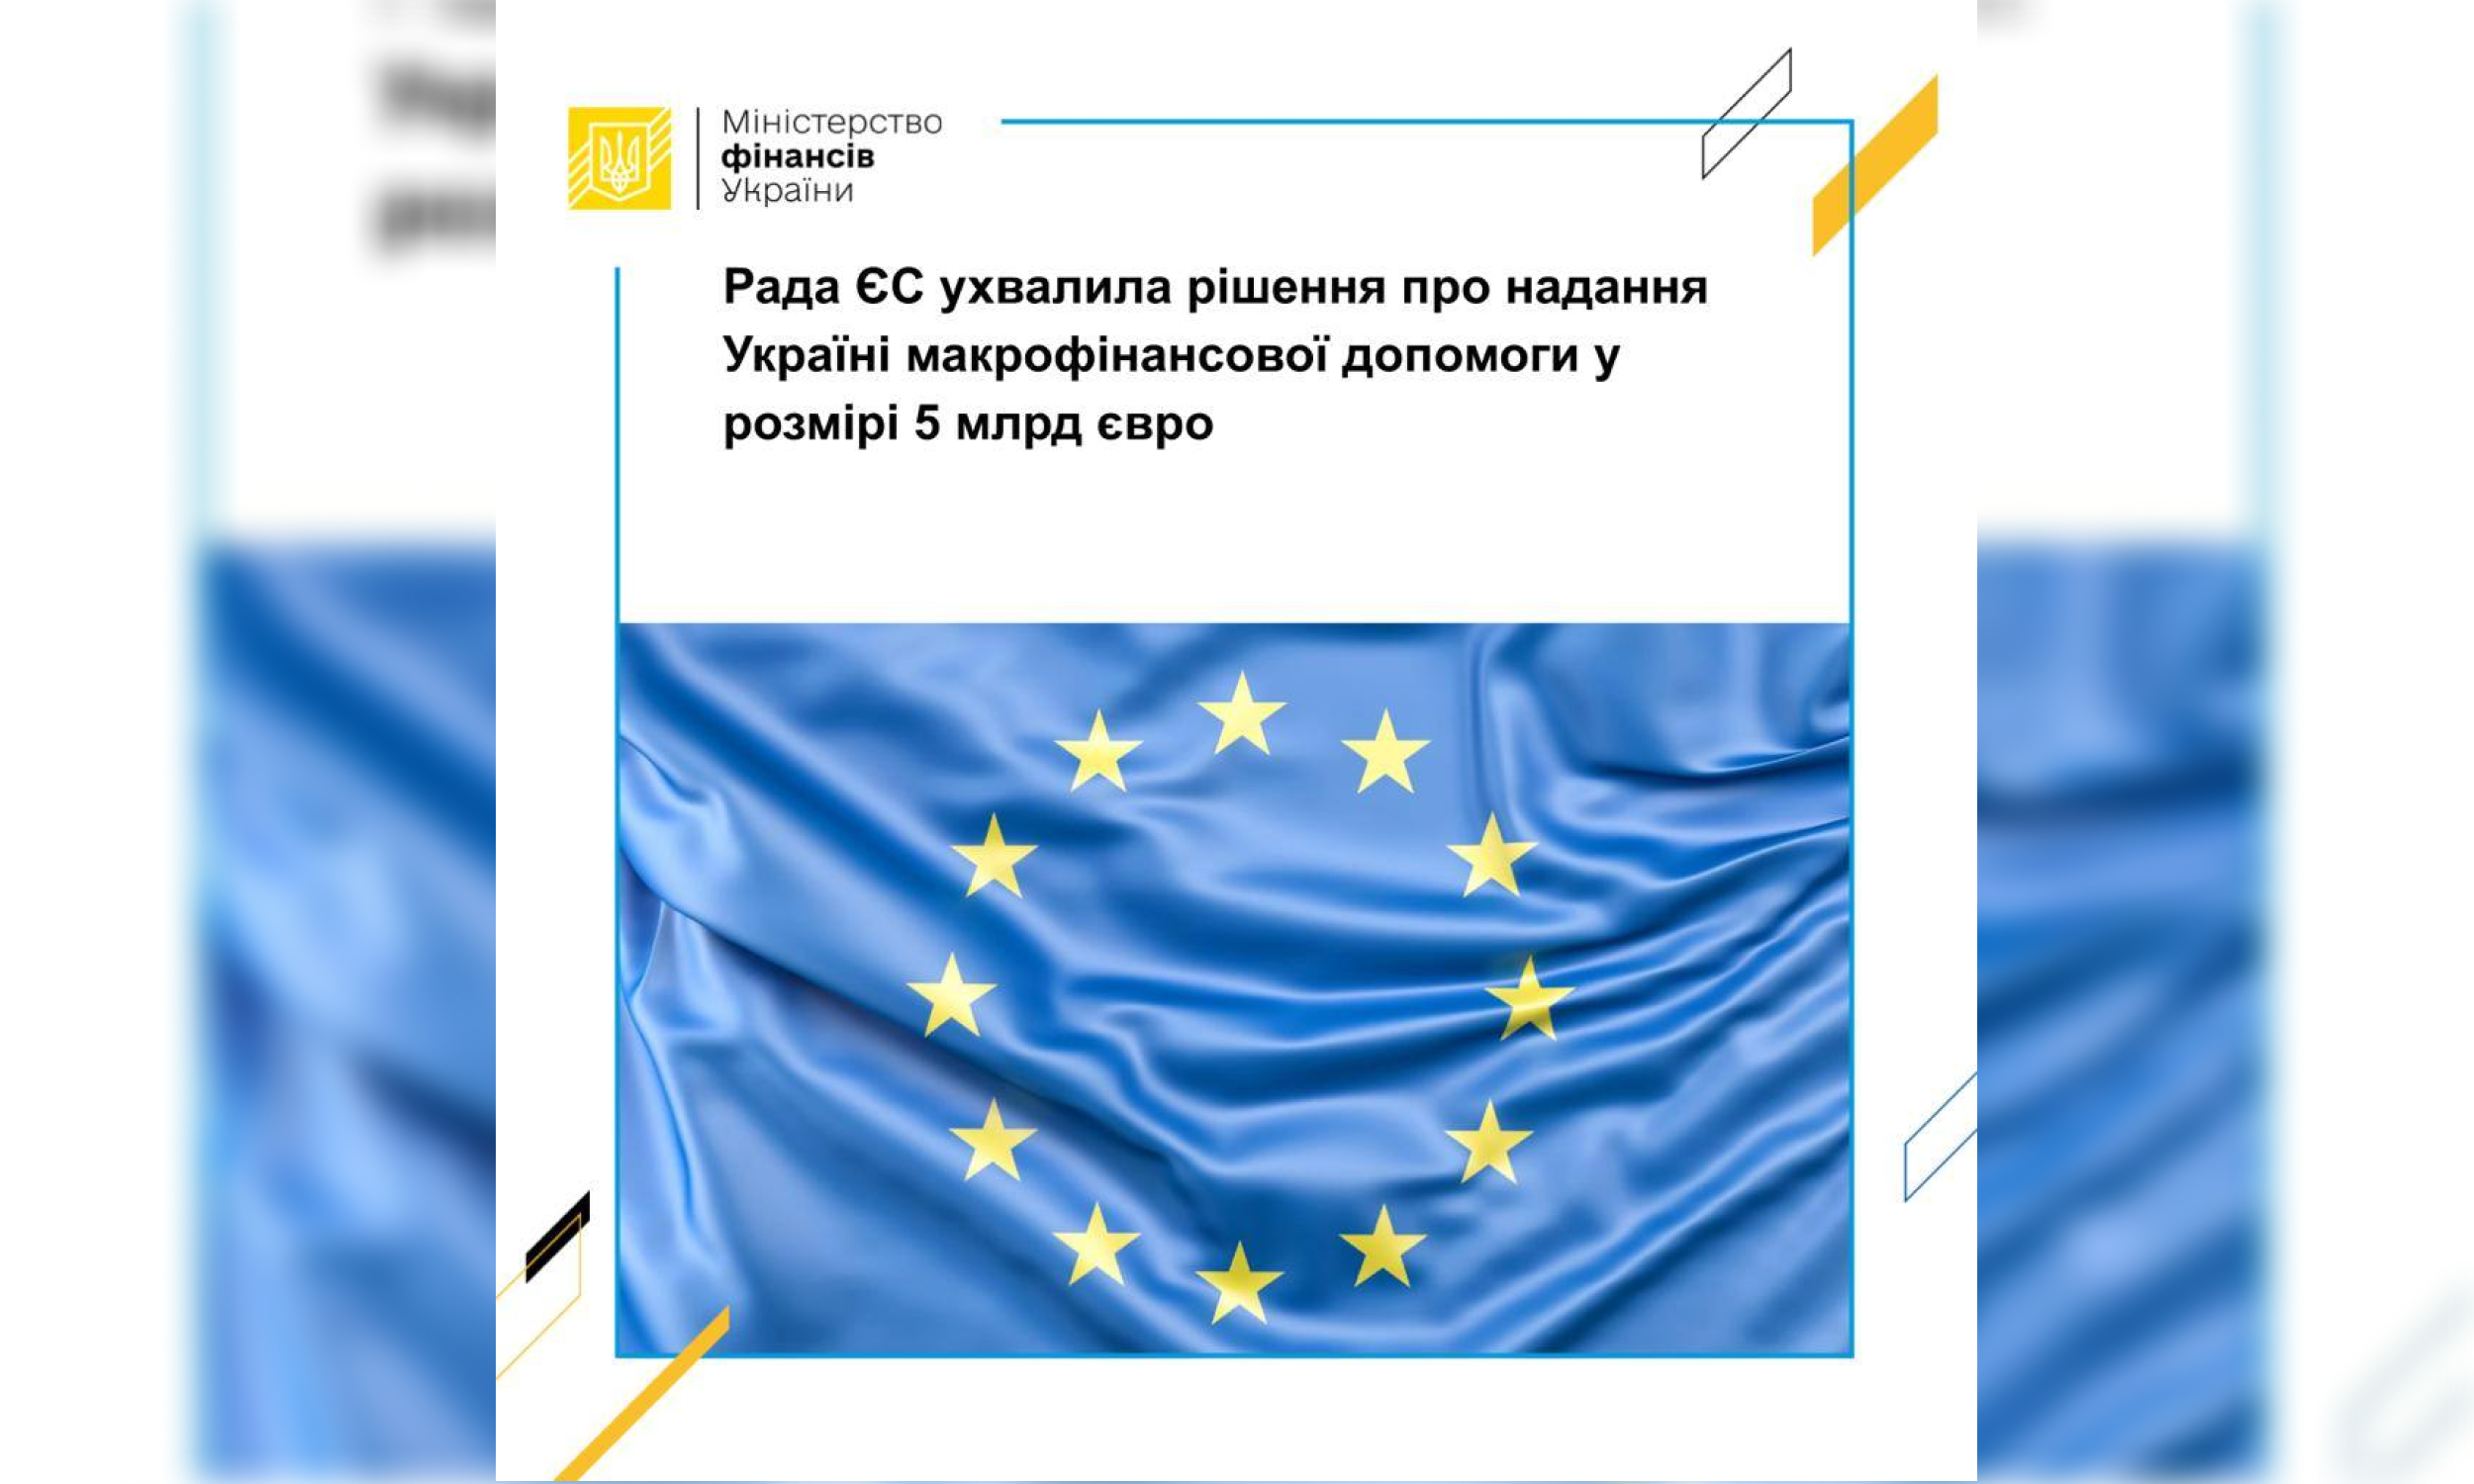 Рада ЄС ухвалила рішення про надання Україні макрофінансової допомоги у розмірі 5 млрд євро